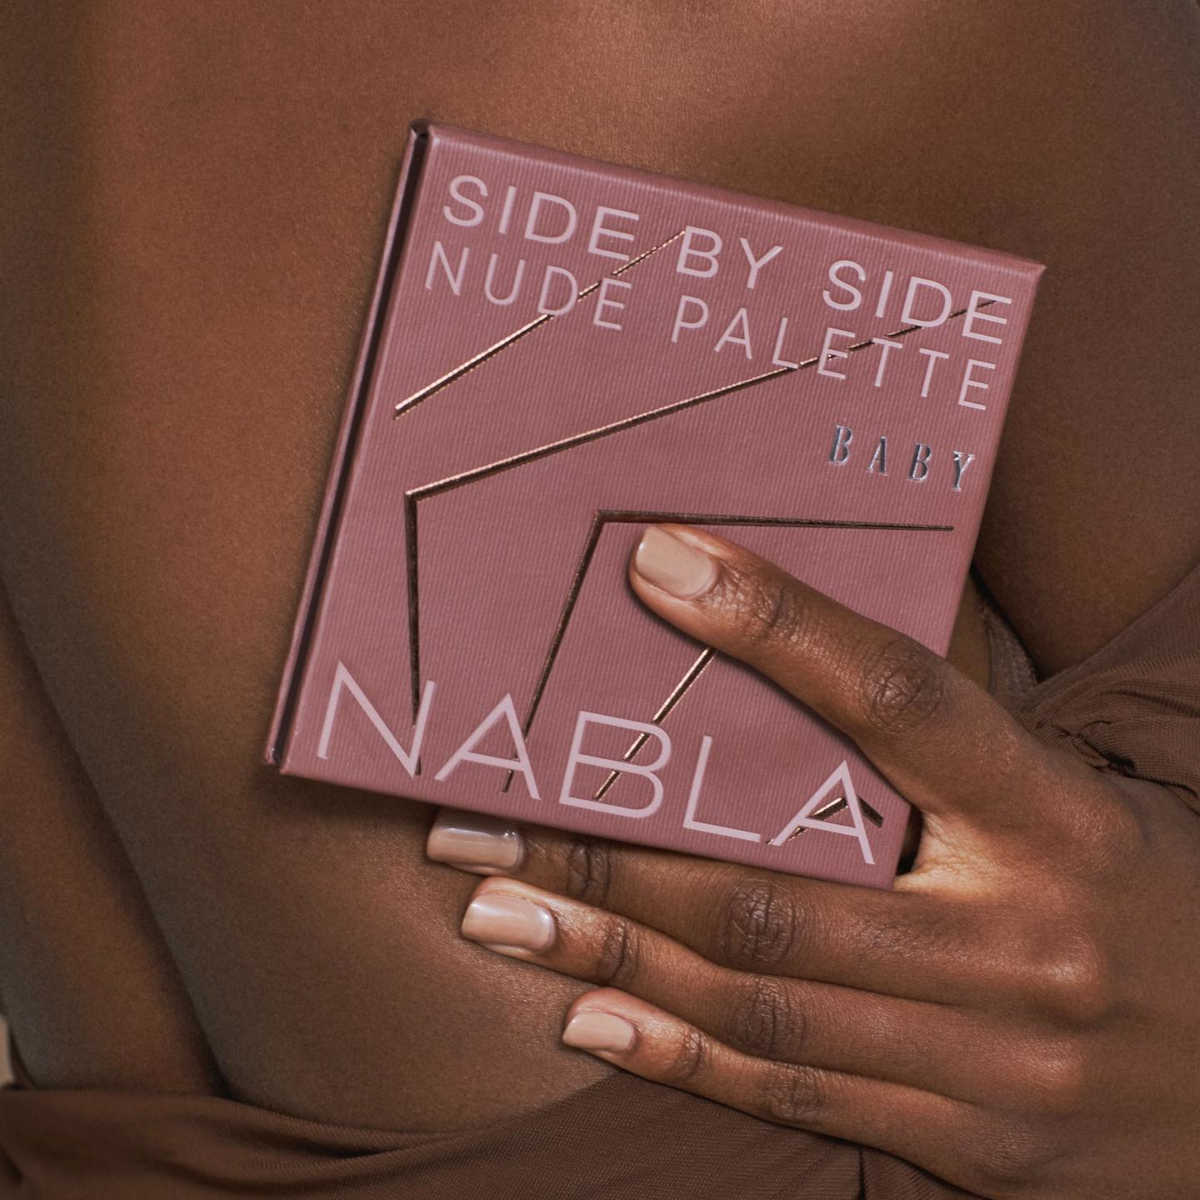 Palette Nabla Side by Side Baby